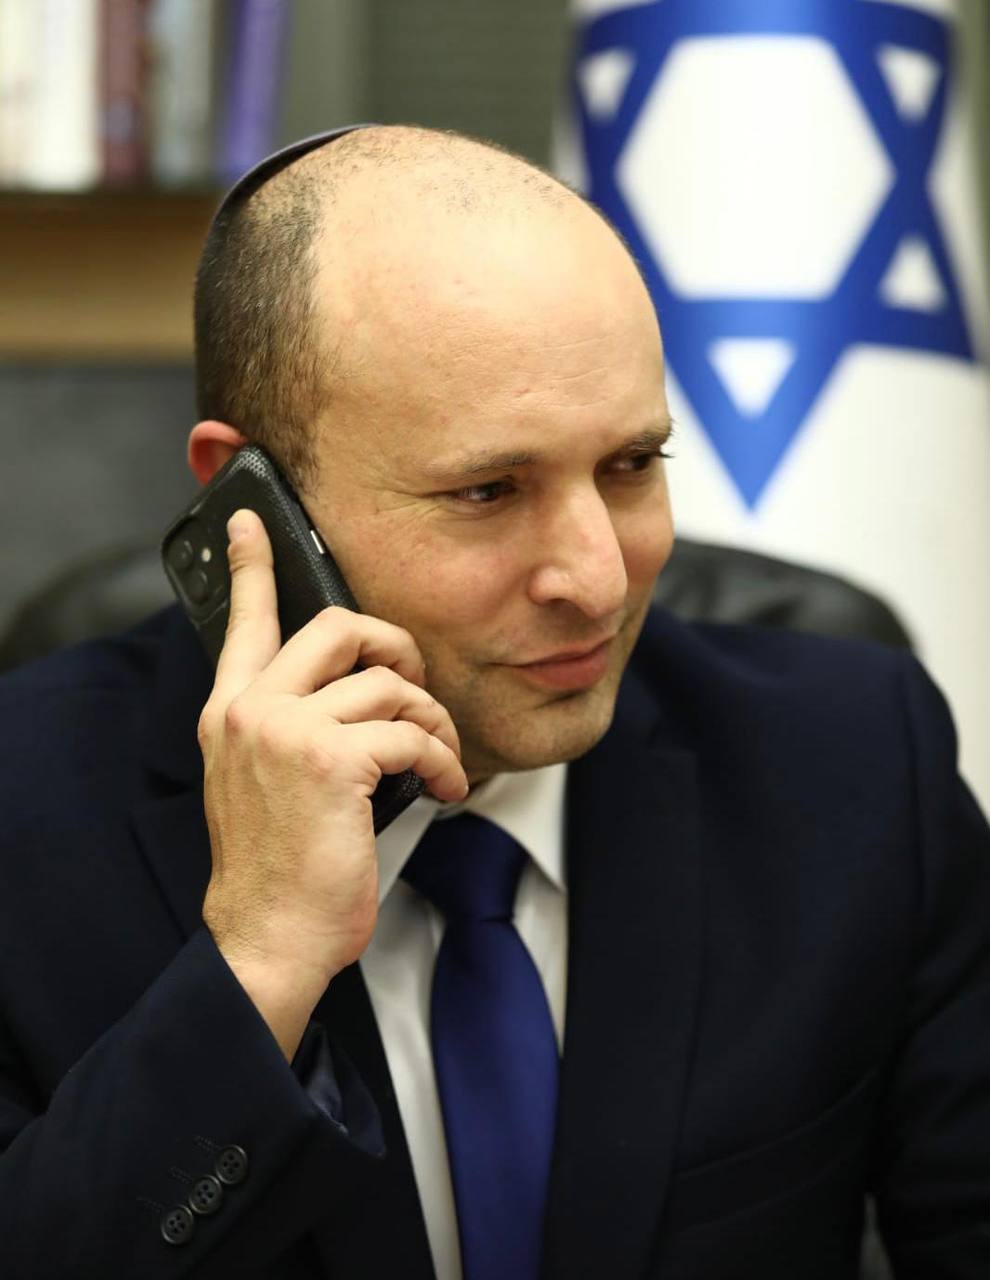 Biden greets Prime Minister Bennett on the phone